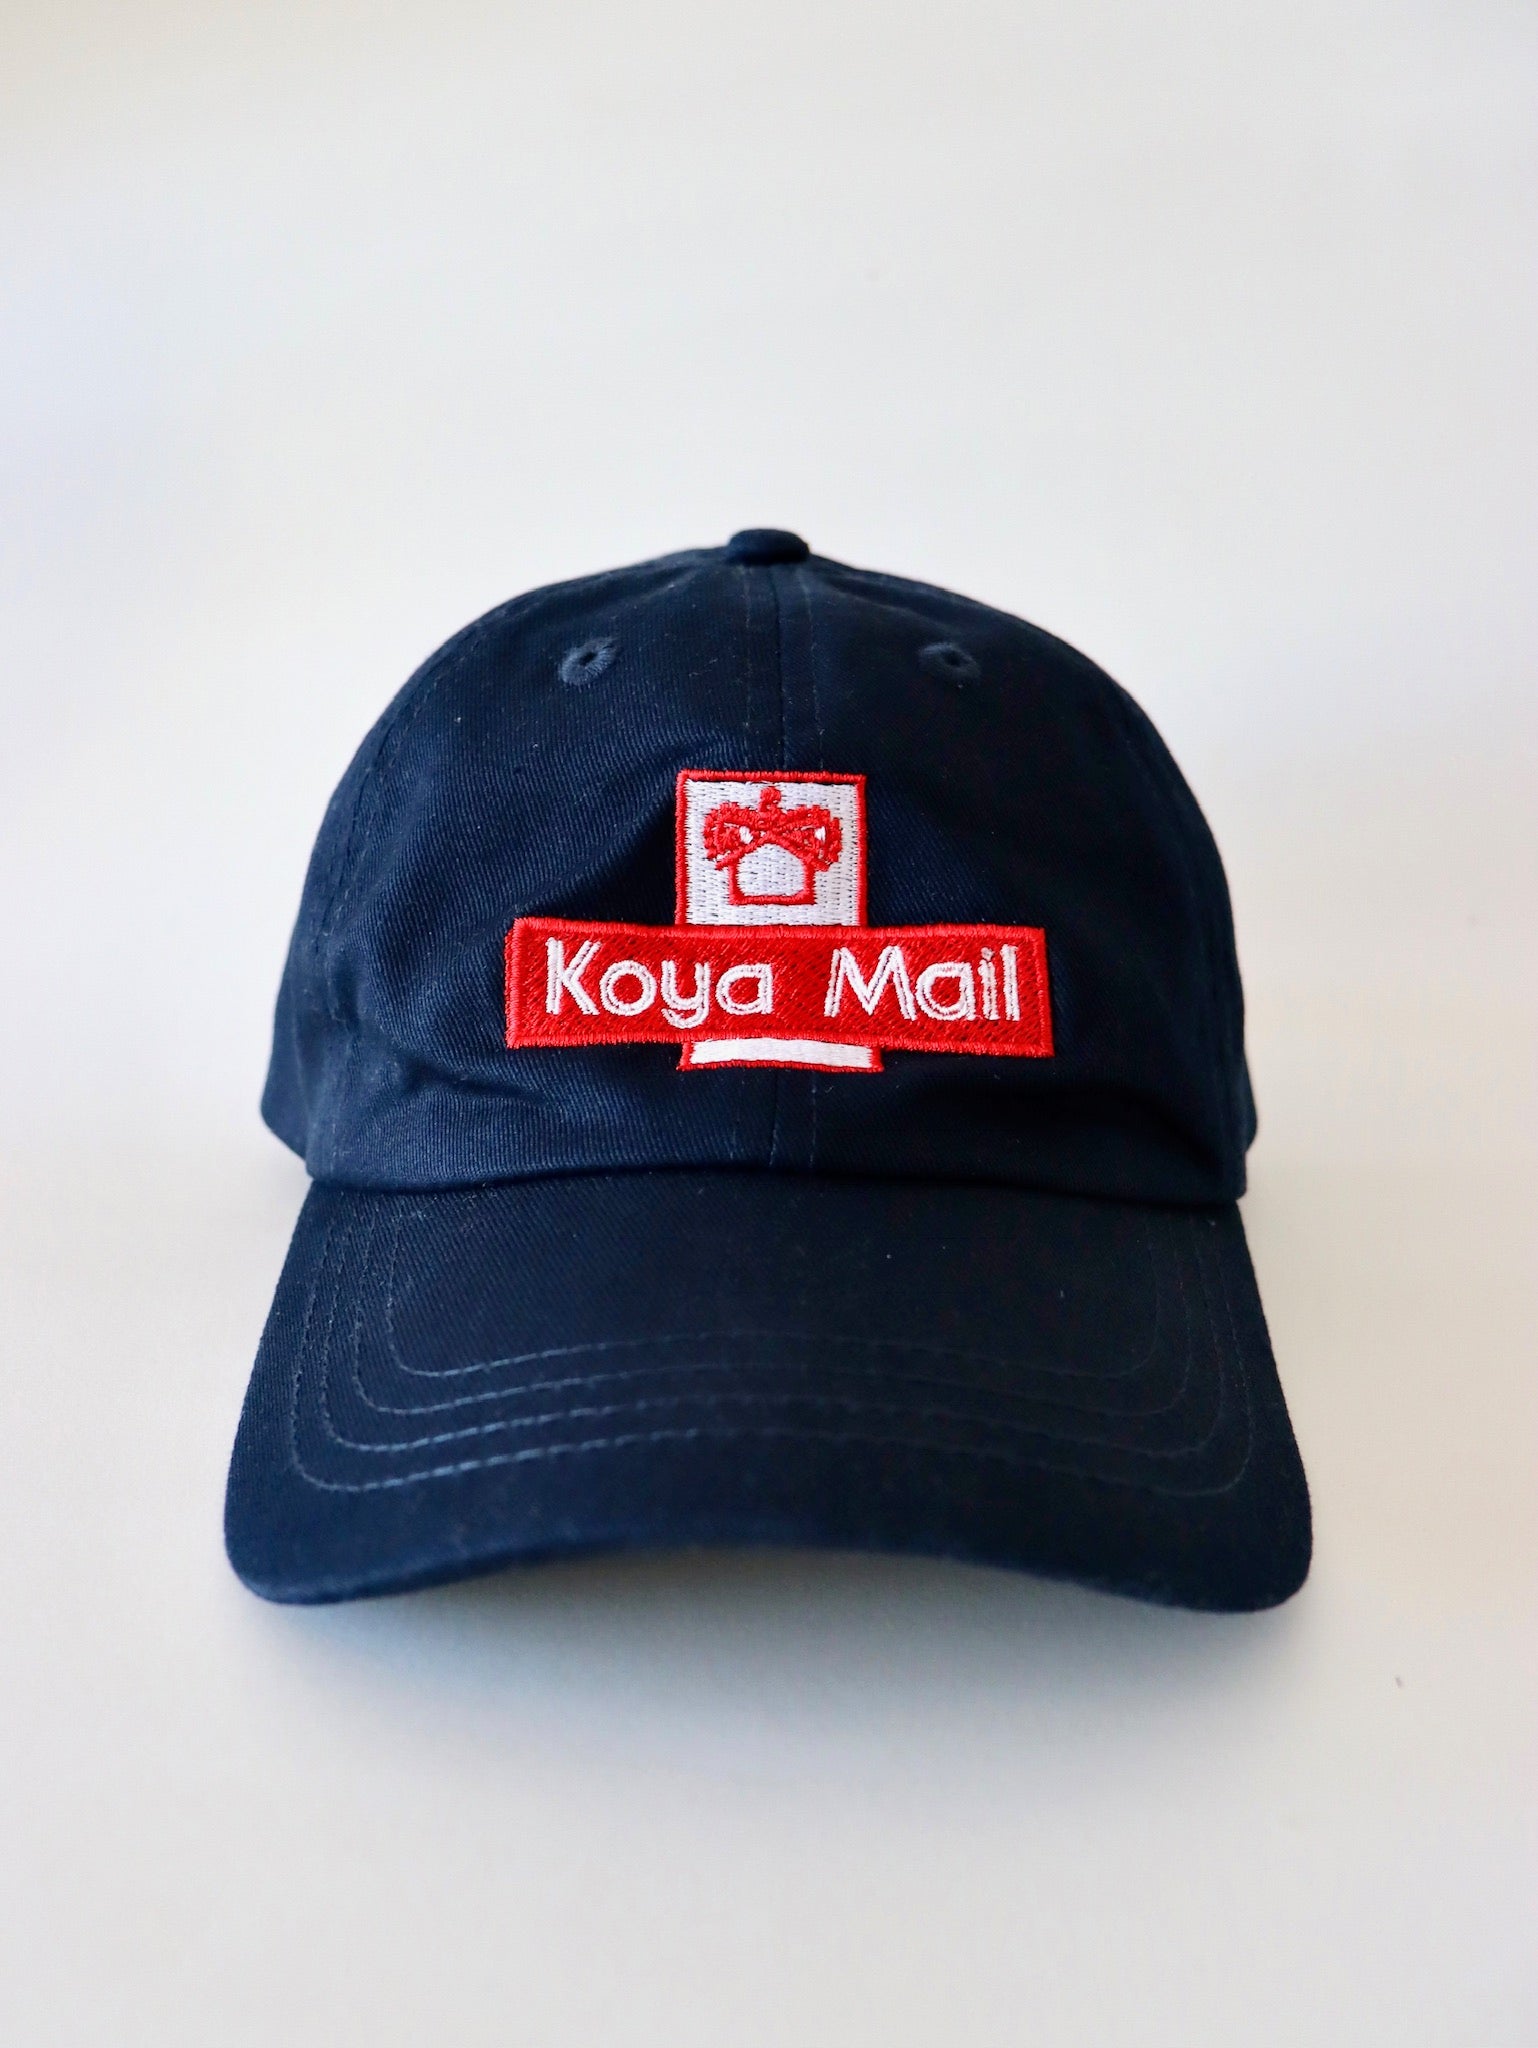 Koya Mail cap